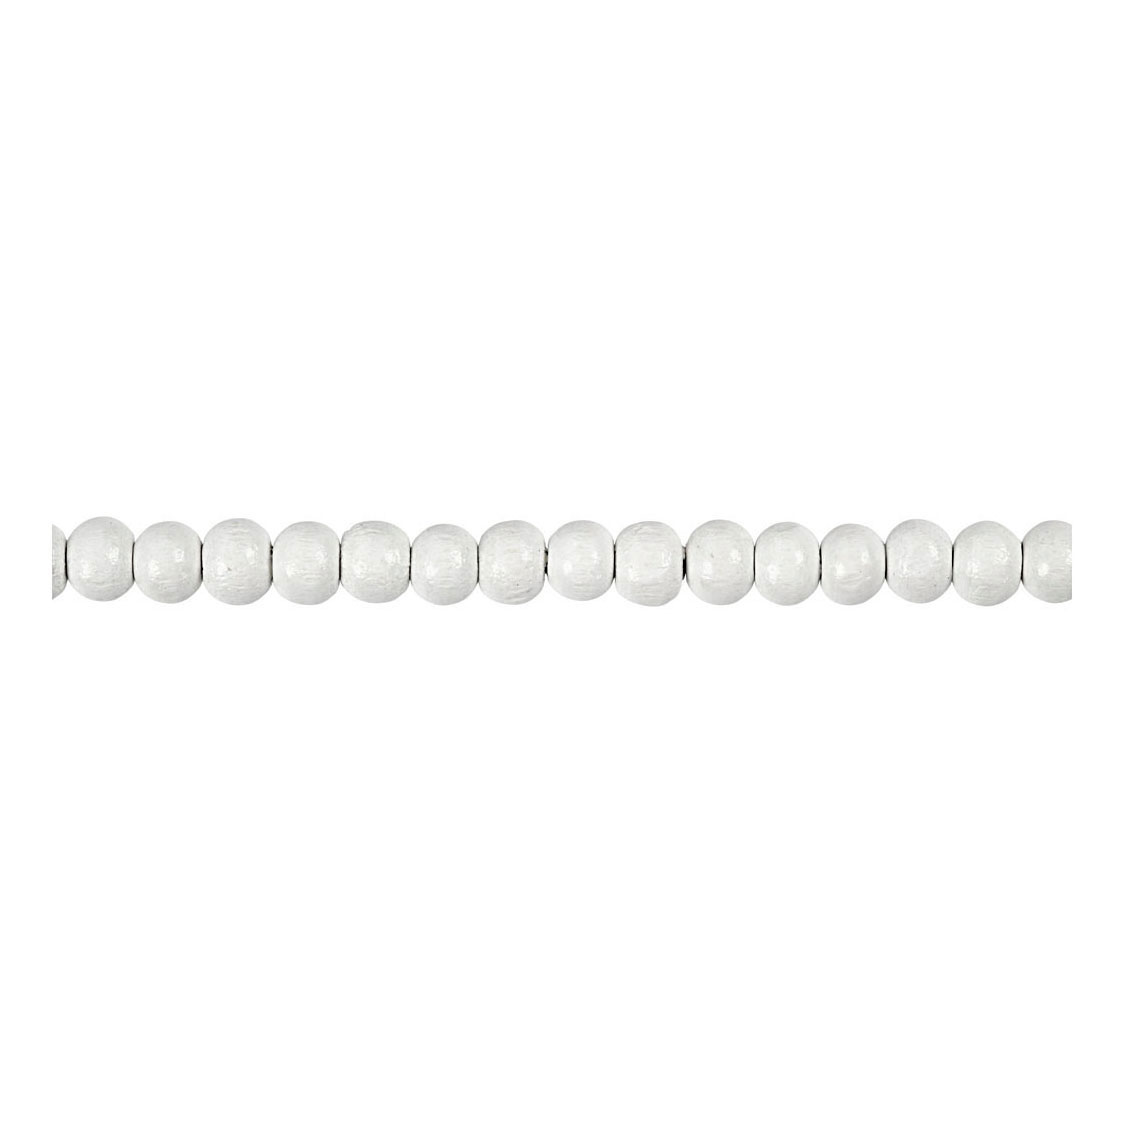 Perles en bois blanches, 150 pièces.